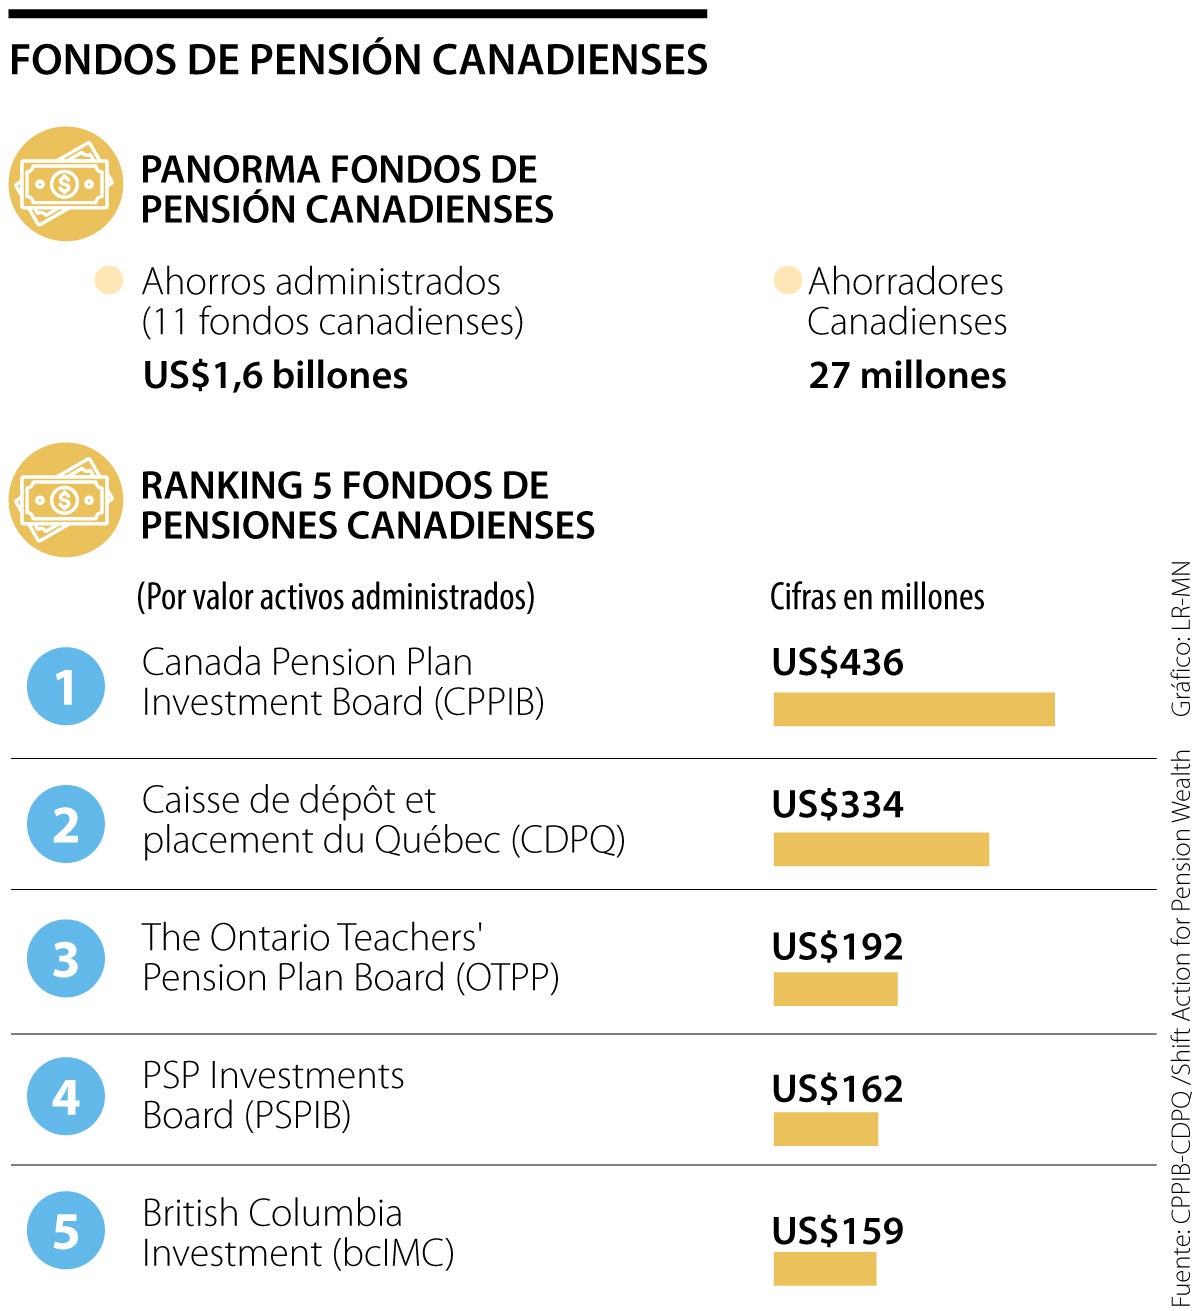 las inversiones que tienen fondos canadienses con su presencia en américa latina